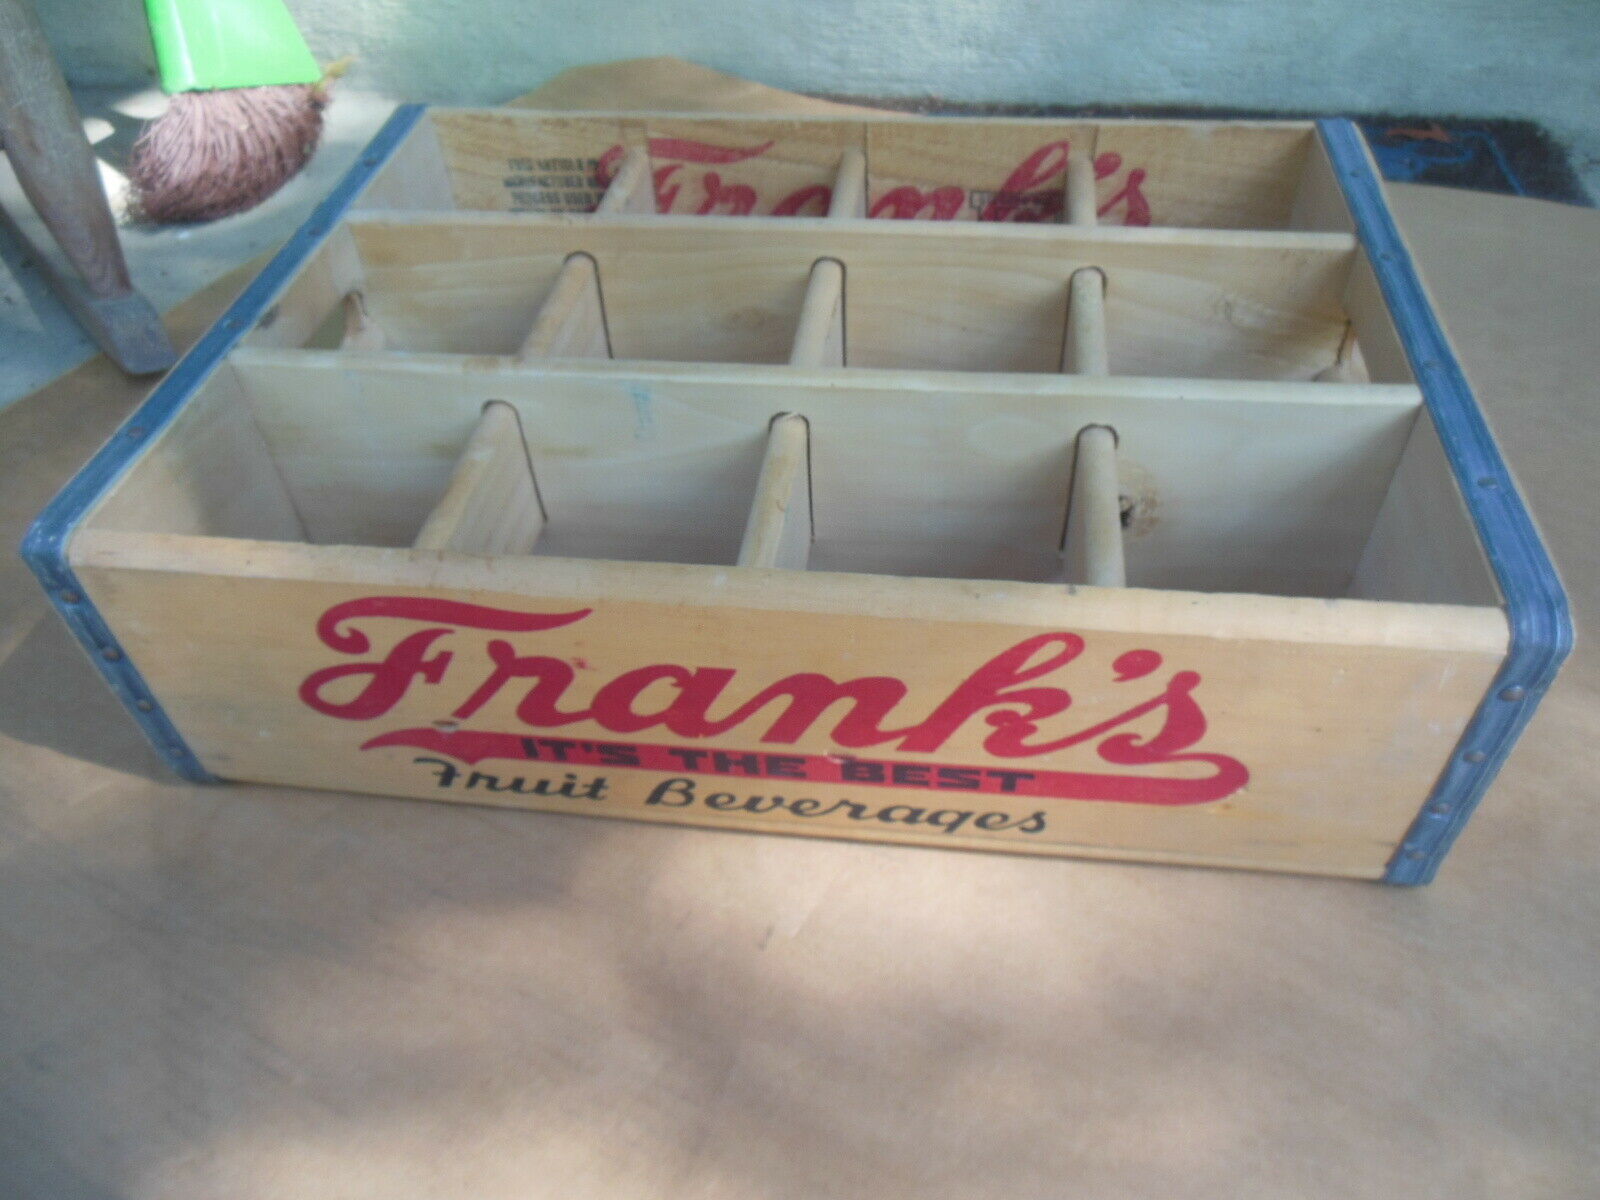 Franks Wooden Fruit Beverage Soda Bottle Crate Philadelphia Pennsylvania 1961